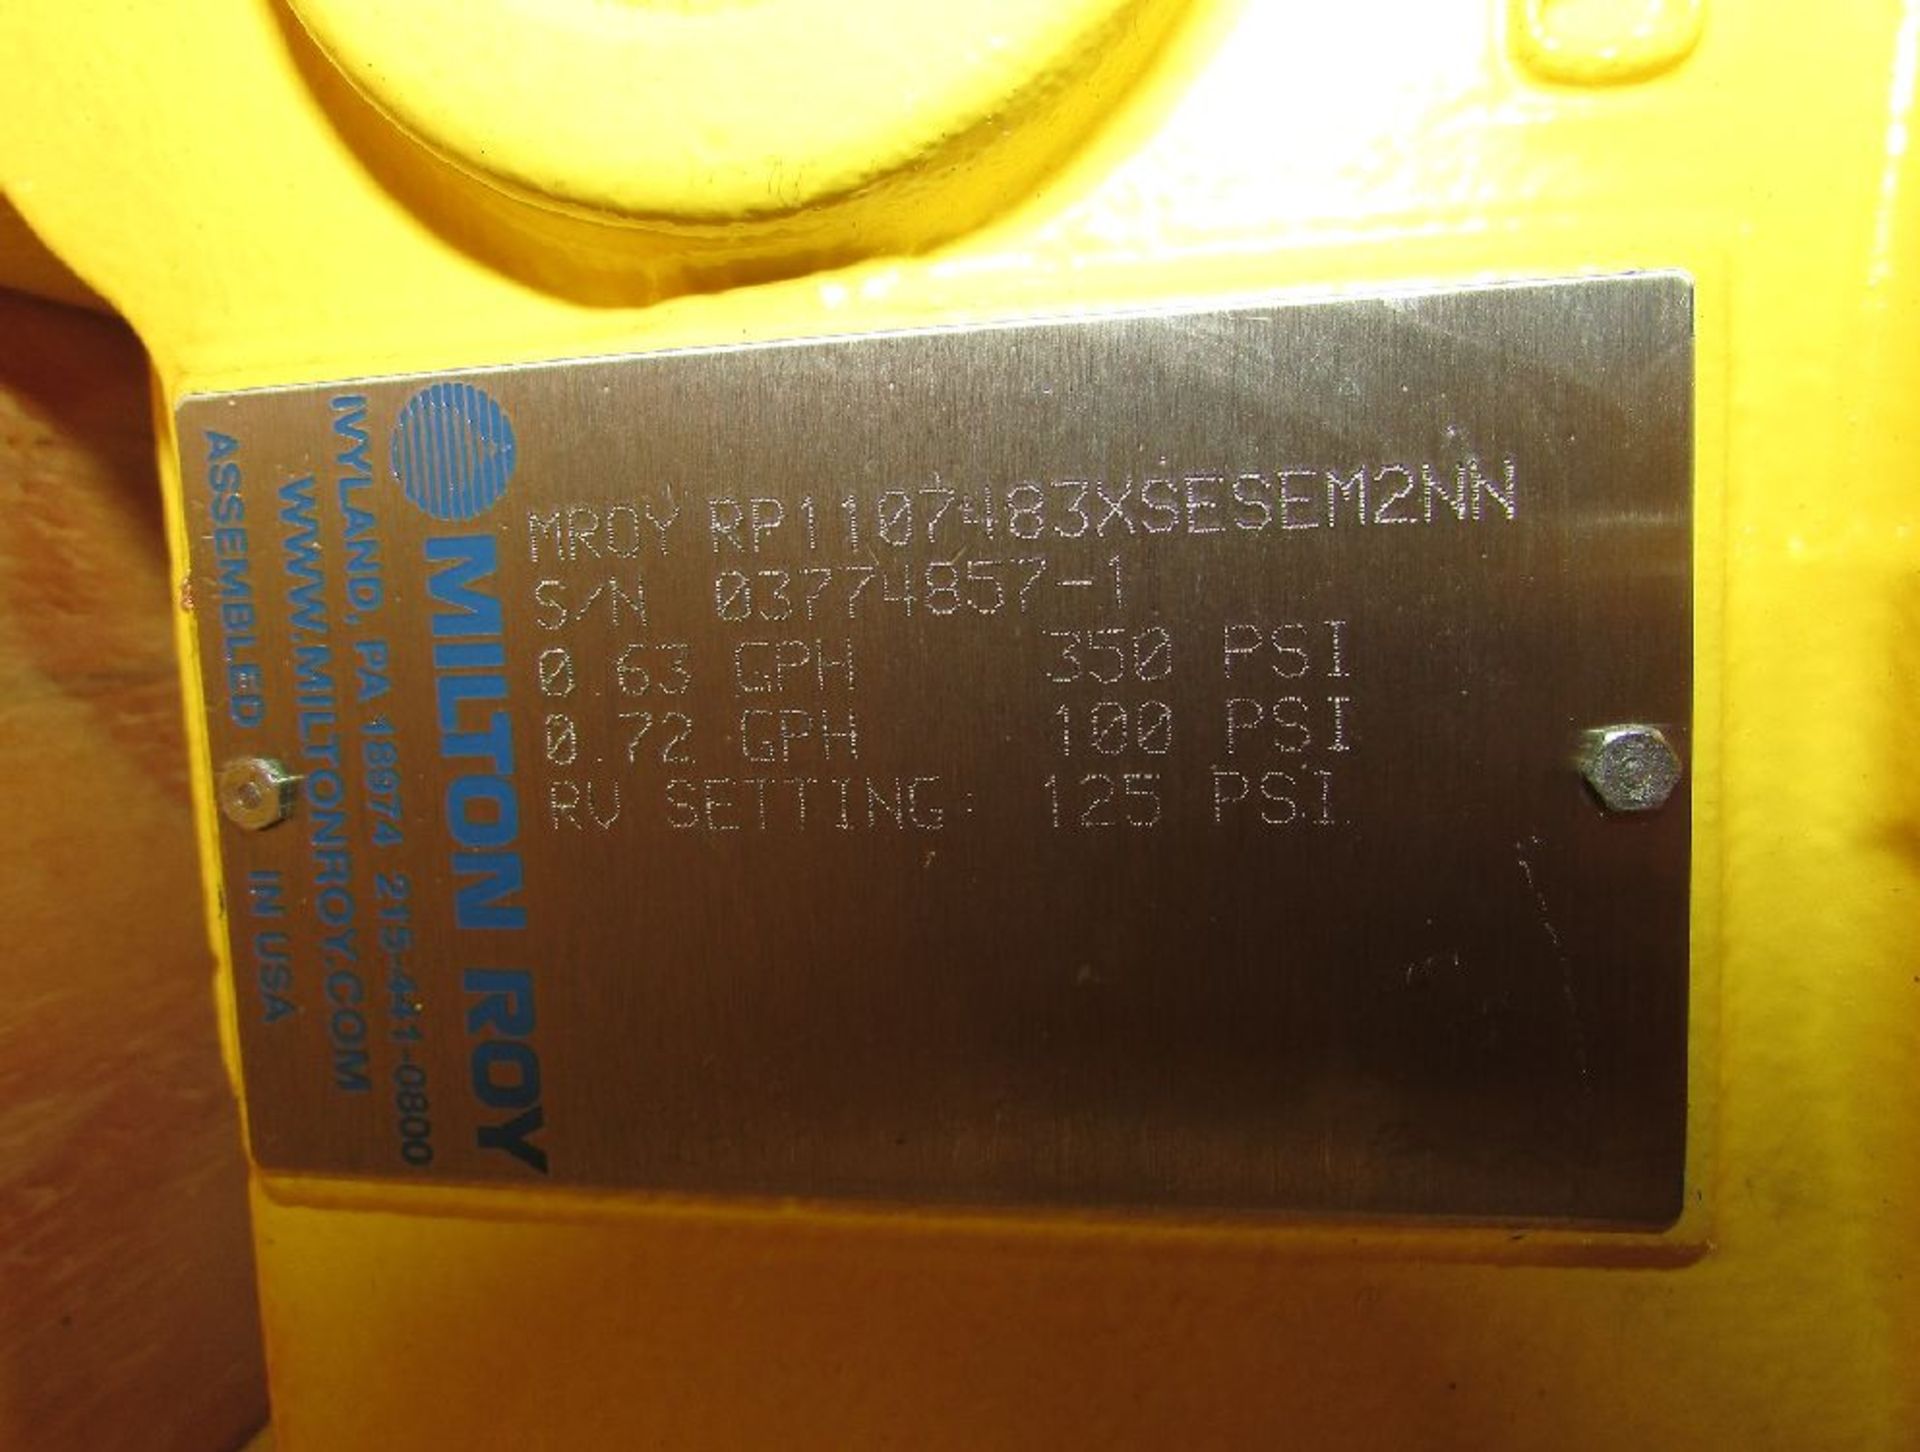 Milton Roy Model MROY RP1107483XSESEM2NN 1/3 HP Metering Pumps - Image 10 of 12